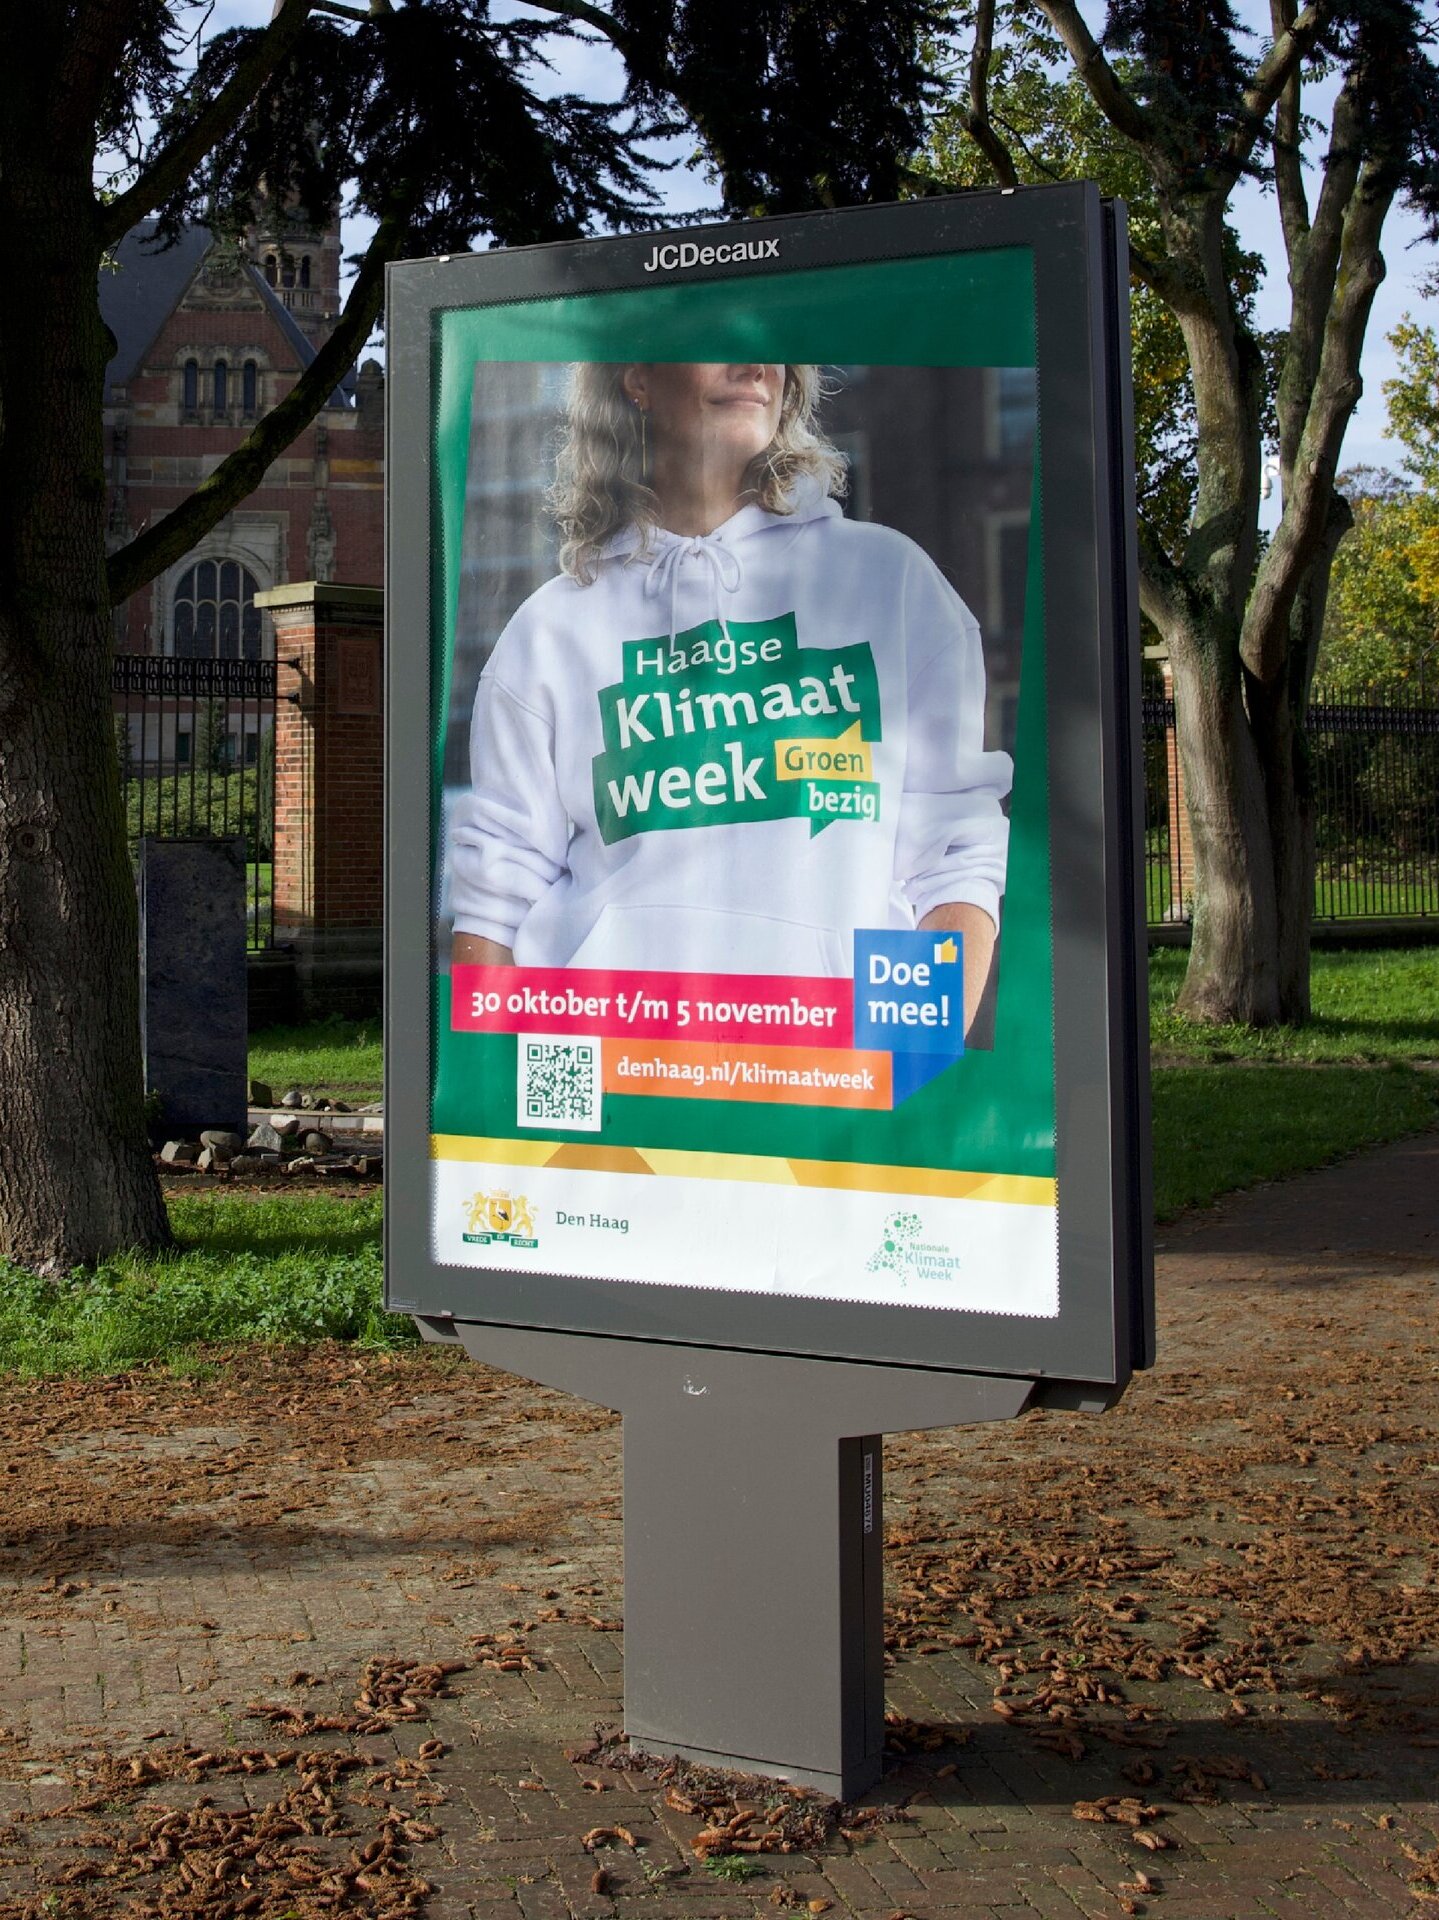 campagne cityboard met vrouw met trui met logo haagse klimaatweek